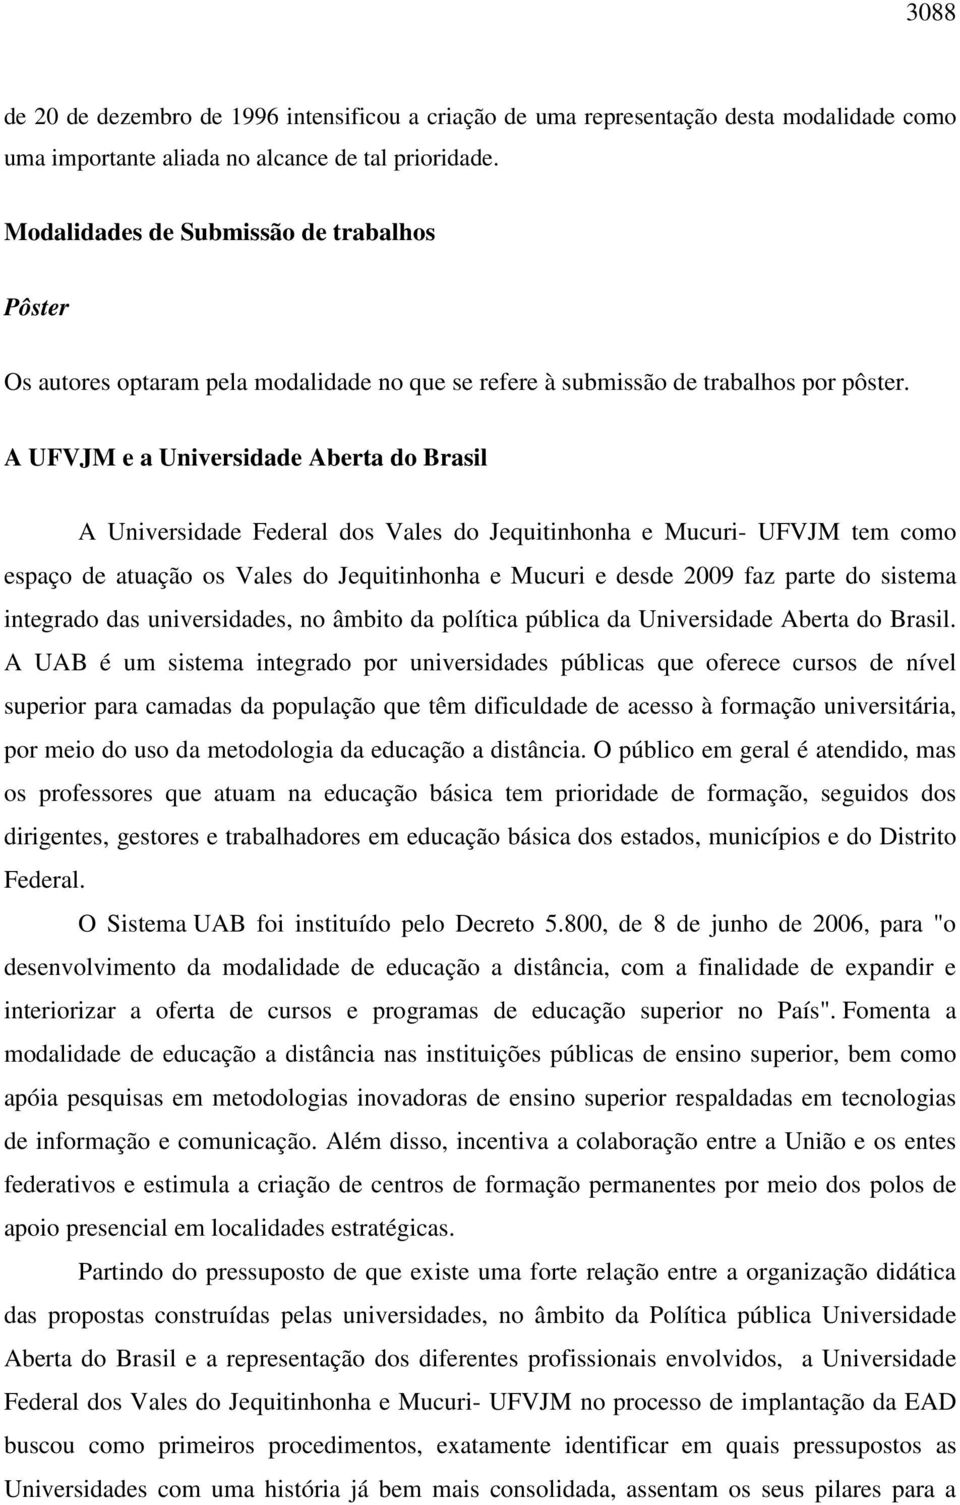 A UFVJM e a Universidade Aberta do Brasil A Universidade Federal dos Vales do Jequitinhonha e Mucuri- UFVJM tem como espaço de atuação os Vales do Jequitinhonha e Mucuri e desde 2009 faz parte do